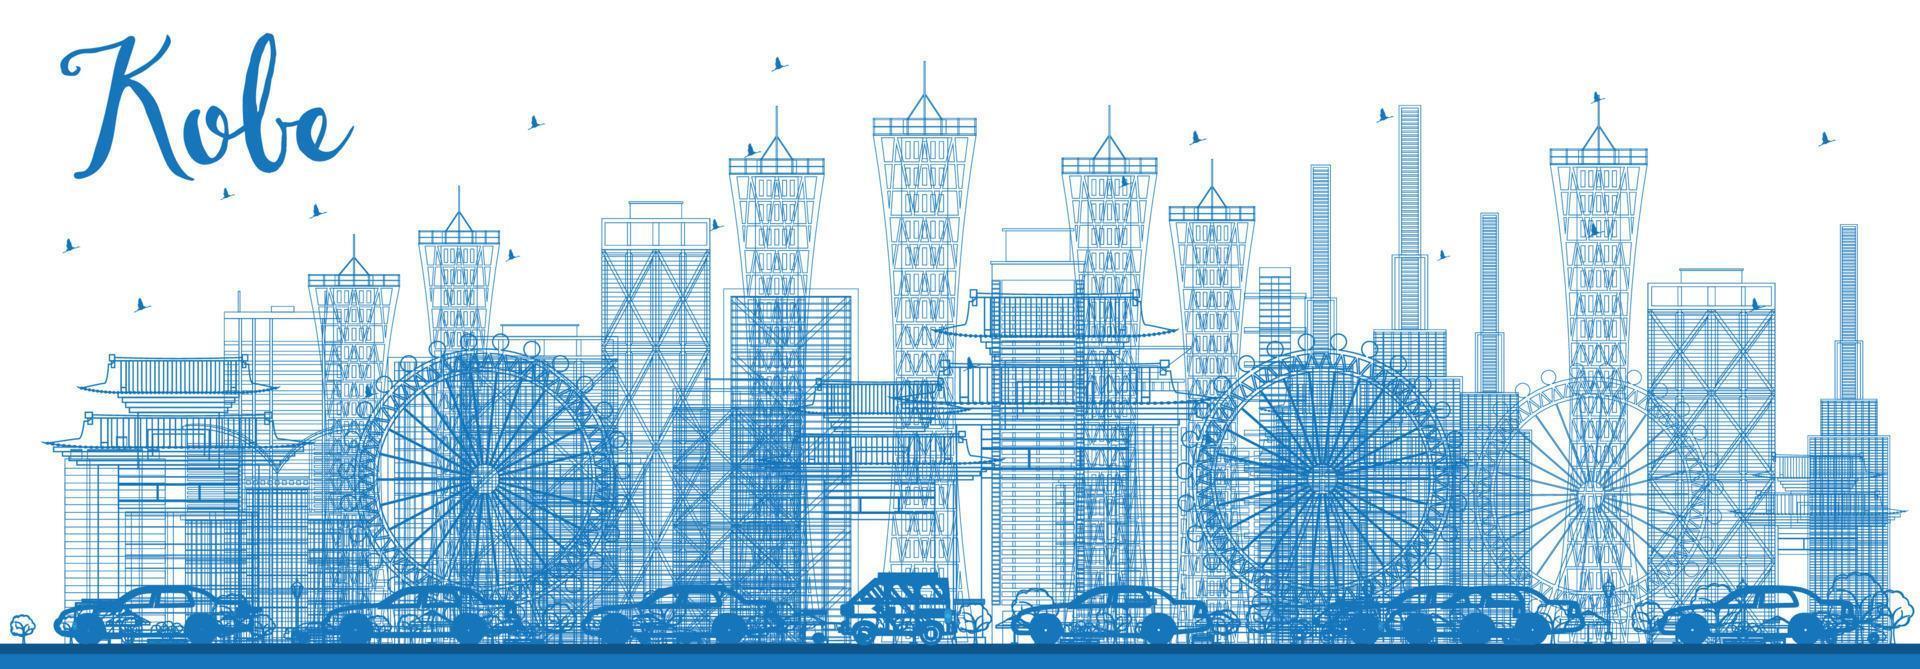 kontur kobe skyline med blå byggnader. vektor